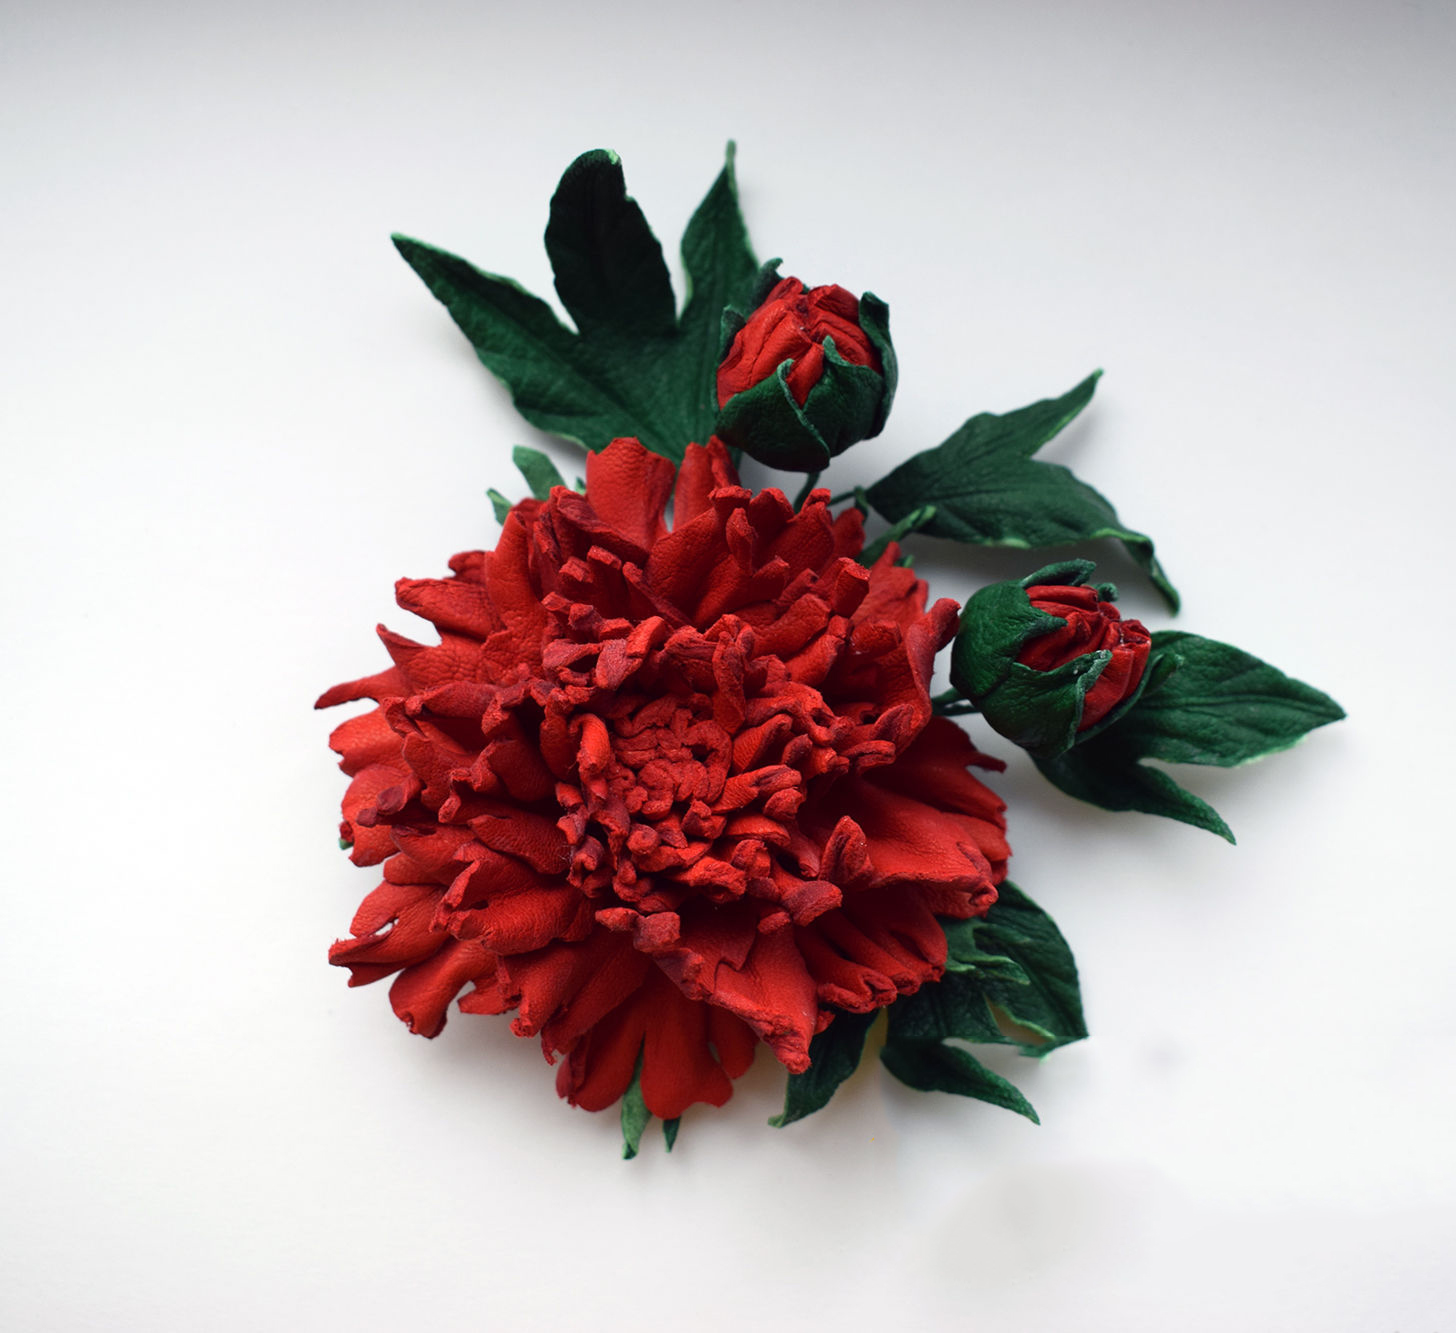 Tuyển tập hình ảnh hoa mẫu đơn đỏ đẹp nhất mời bạn chiêm ngưỡng - [Kích thước hình ảnh: 1456x1333 px]